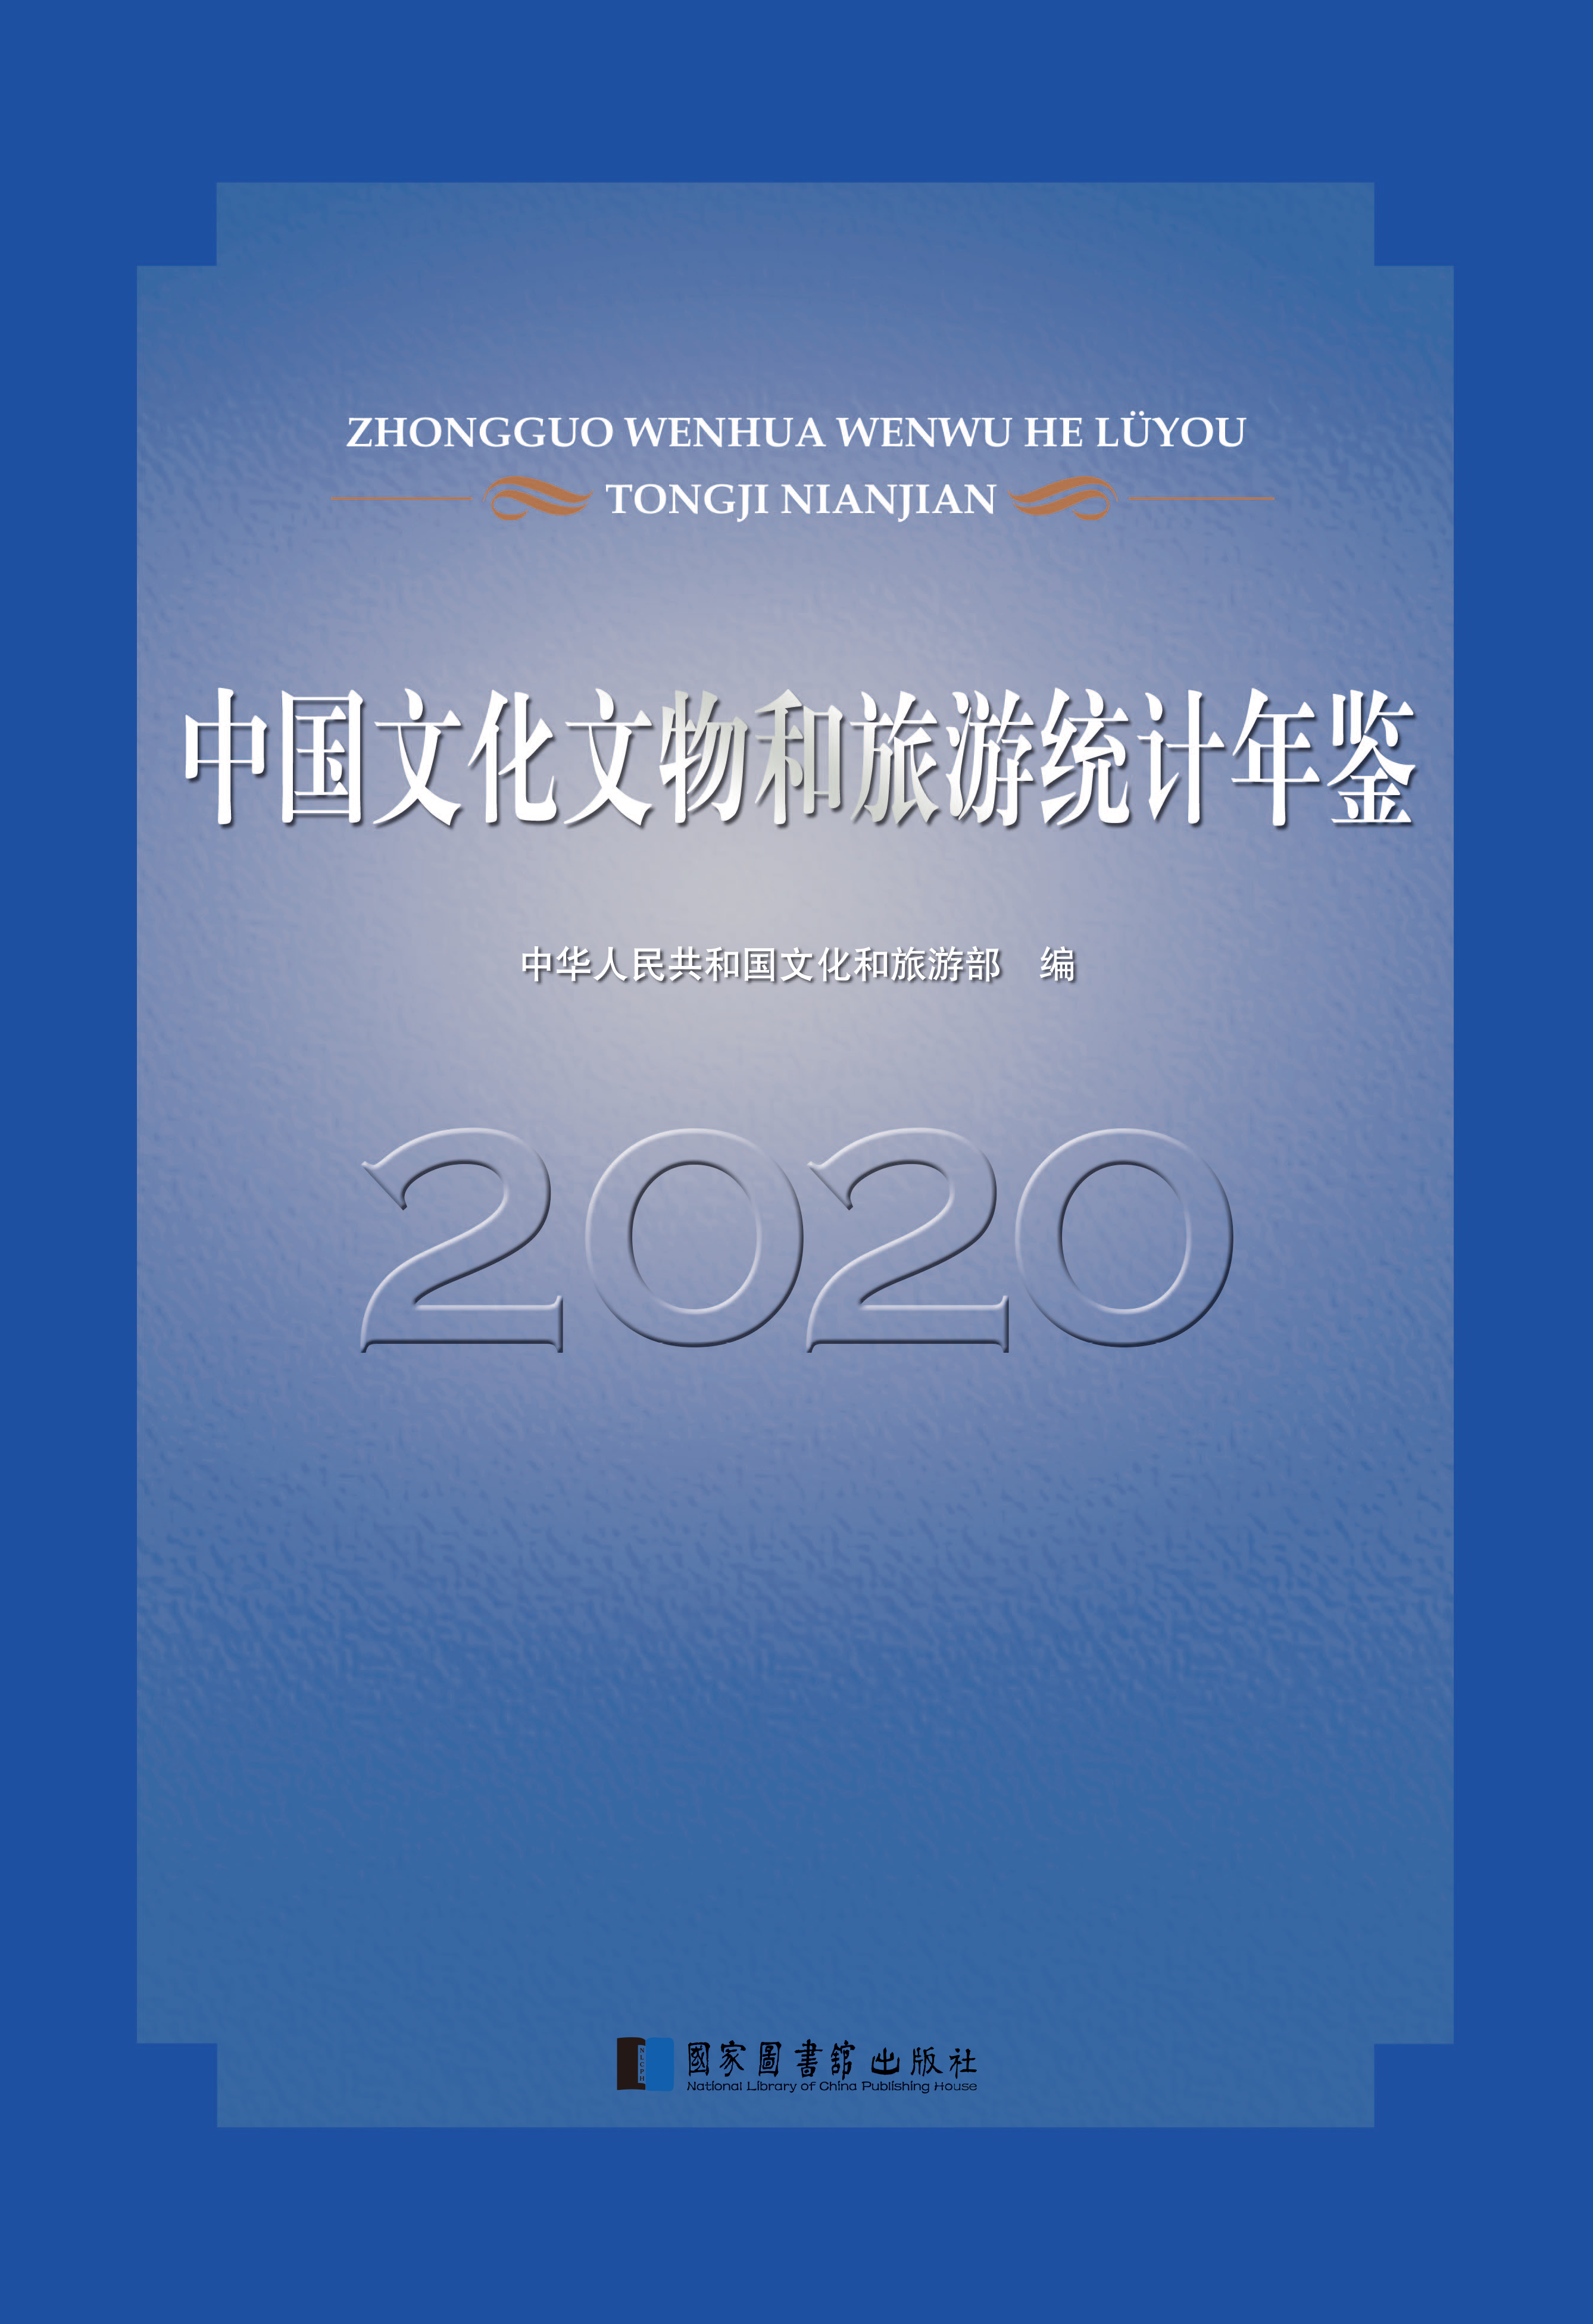 中国文化文物和旅游统计年鉴2020